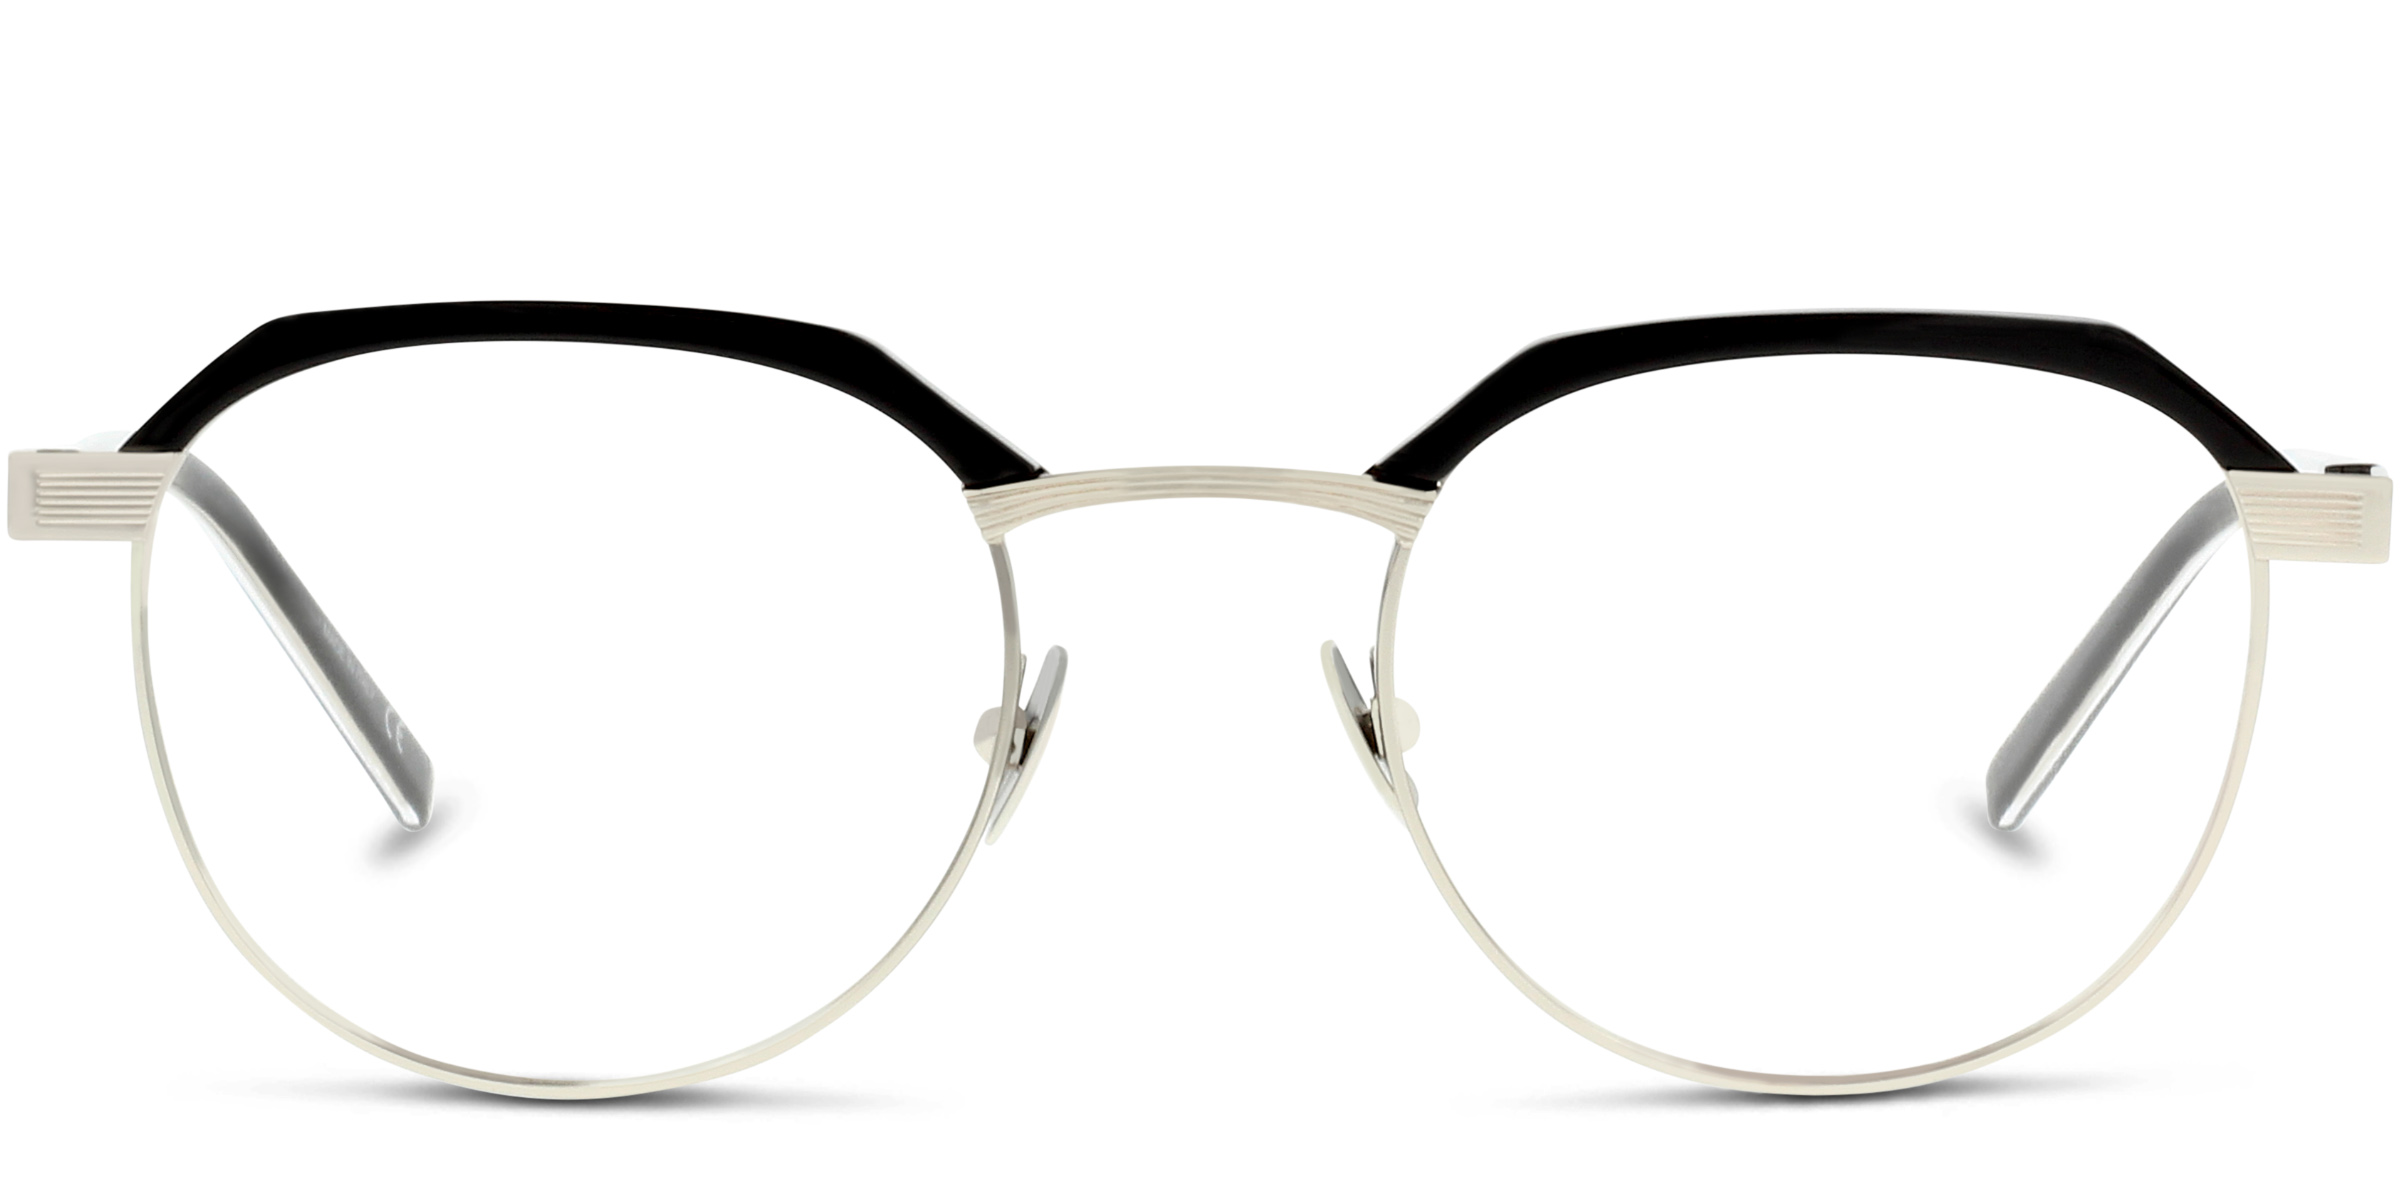 Buy Saint Laurent SL 124 eyeglasses for men at For Eyes